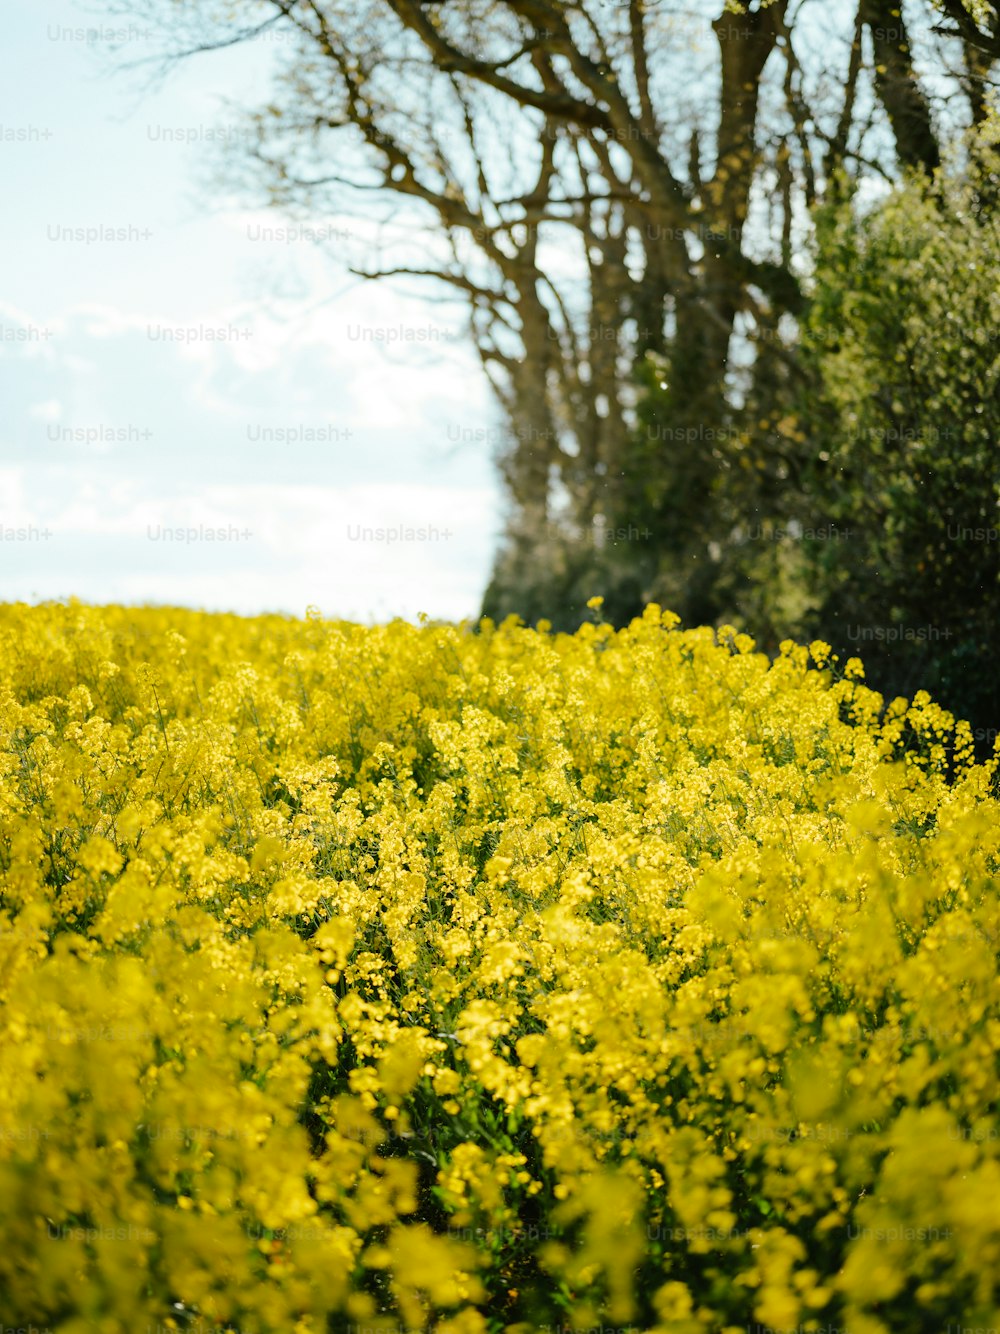 Un champ plein de fleurs jaunes avec des arbres en arrière-plan